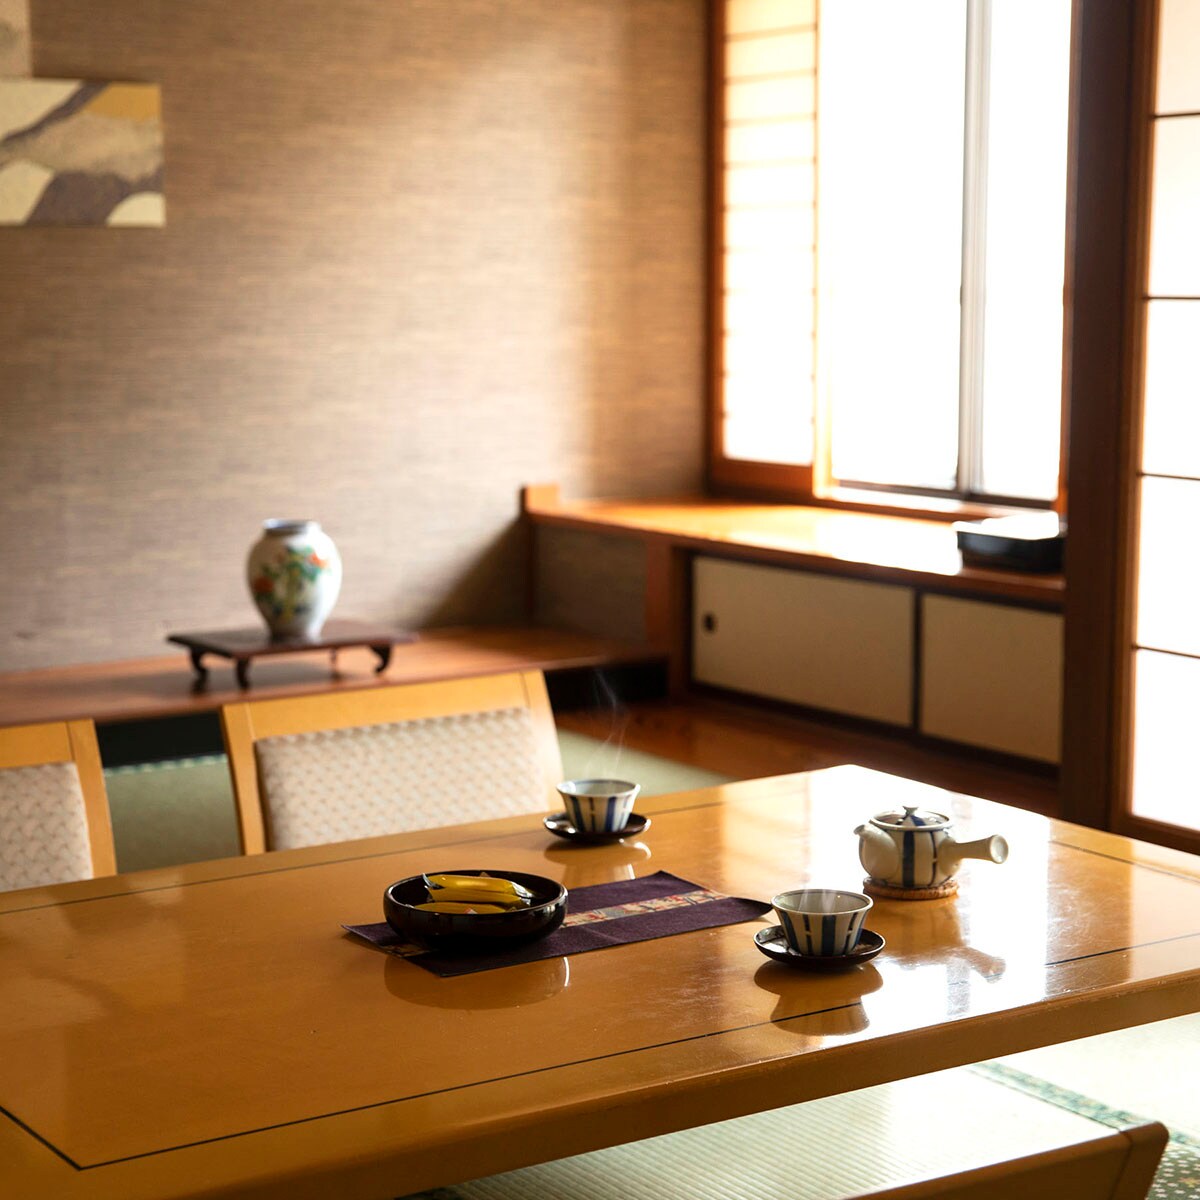 ■그리움관 일본식 방